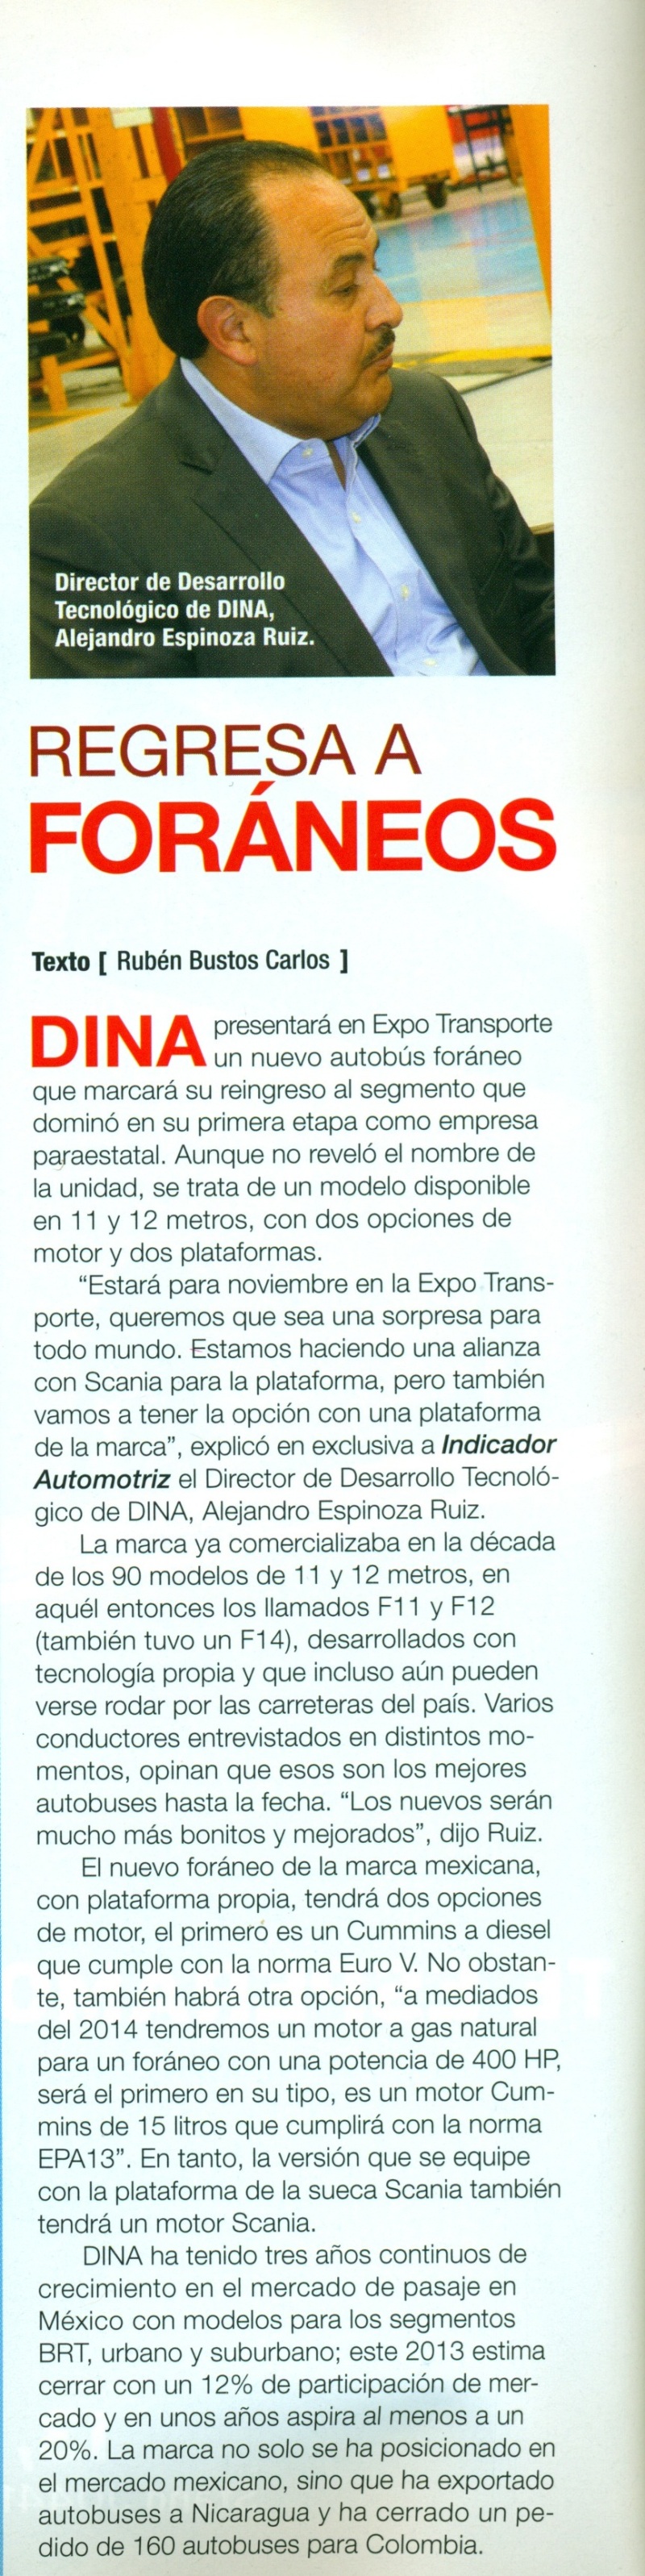 Revista %22Indicador Automotriz%22 Noviembre 2013 Pag. 50